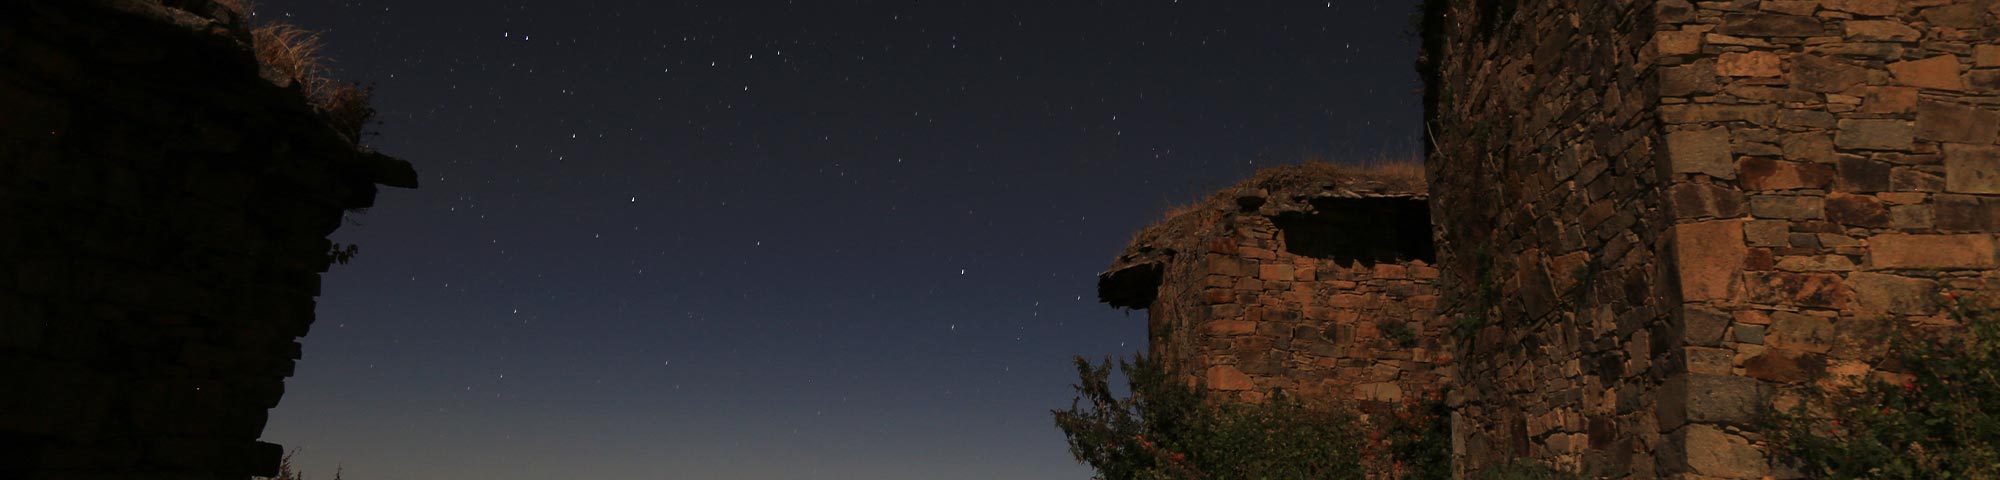 Huaral: Rúpac es elegido como uno de los 7 destinos para el turismo astronómico a nivel mundial